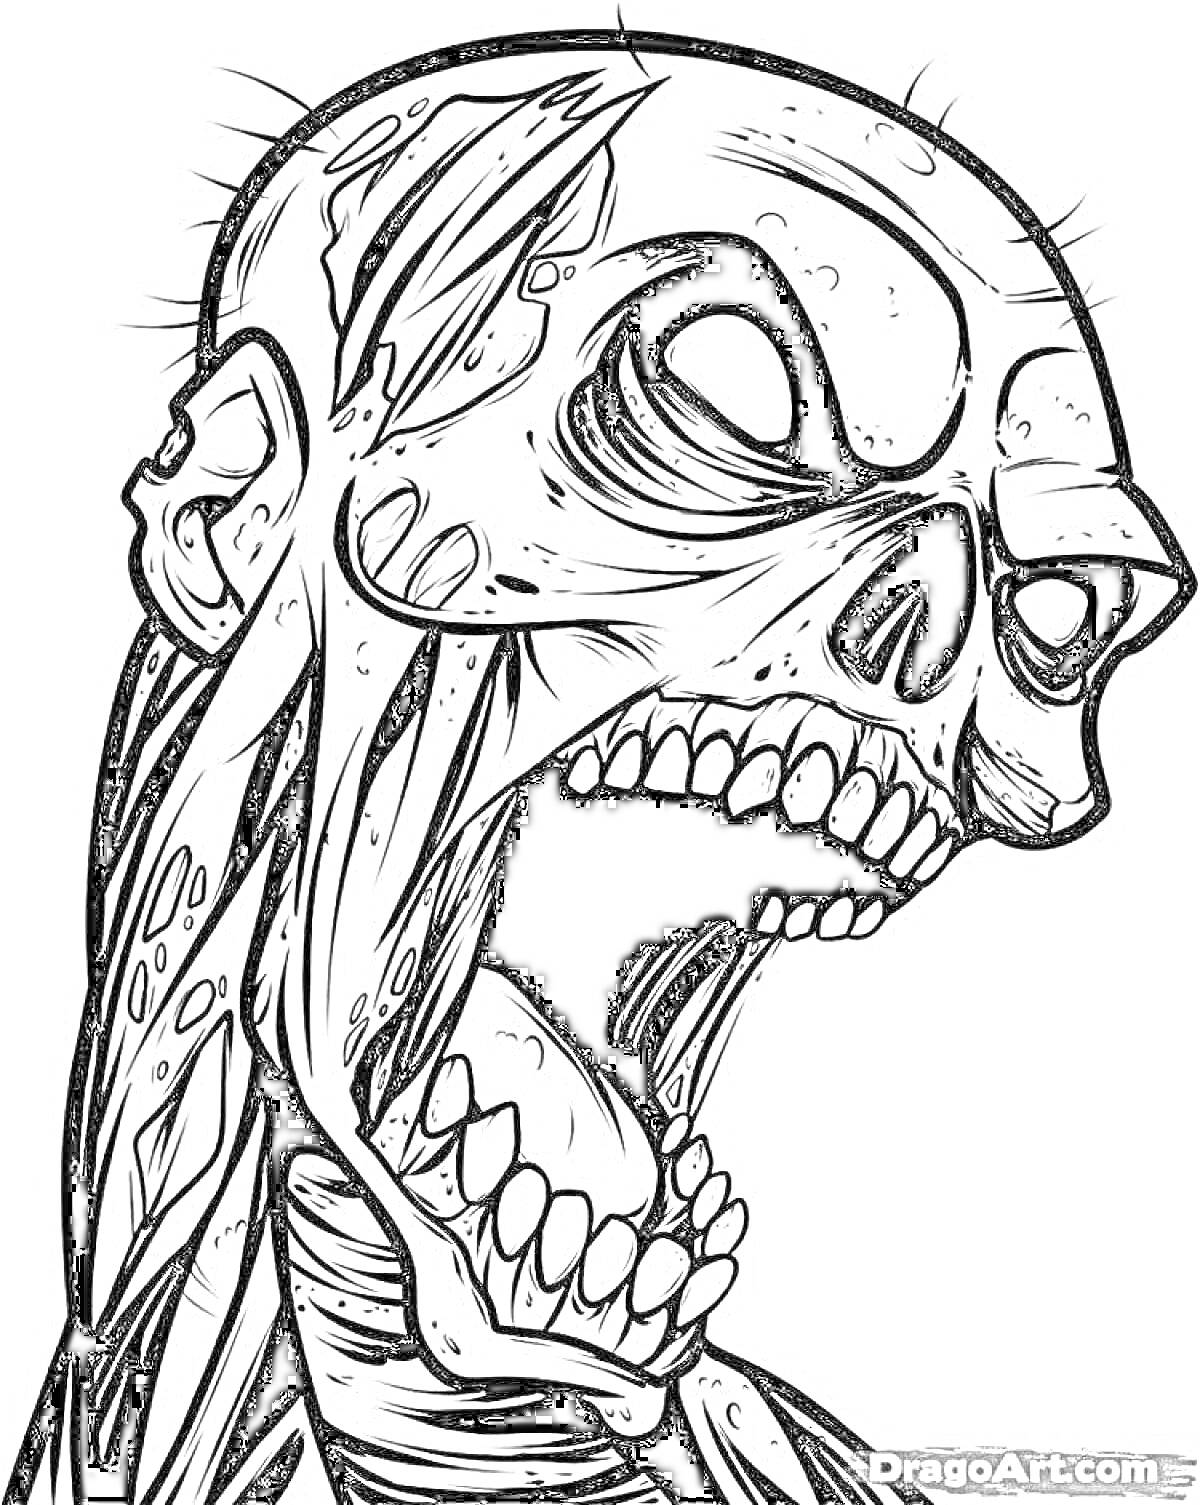 Раскраска Скелет с открытым ртом с клыками, видны мышечные ткани и подвижные суставы, множество шрамов на черепе